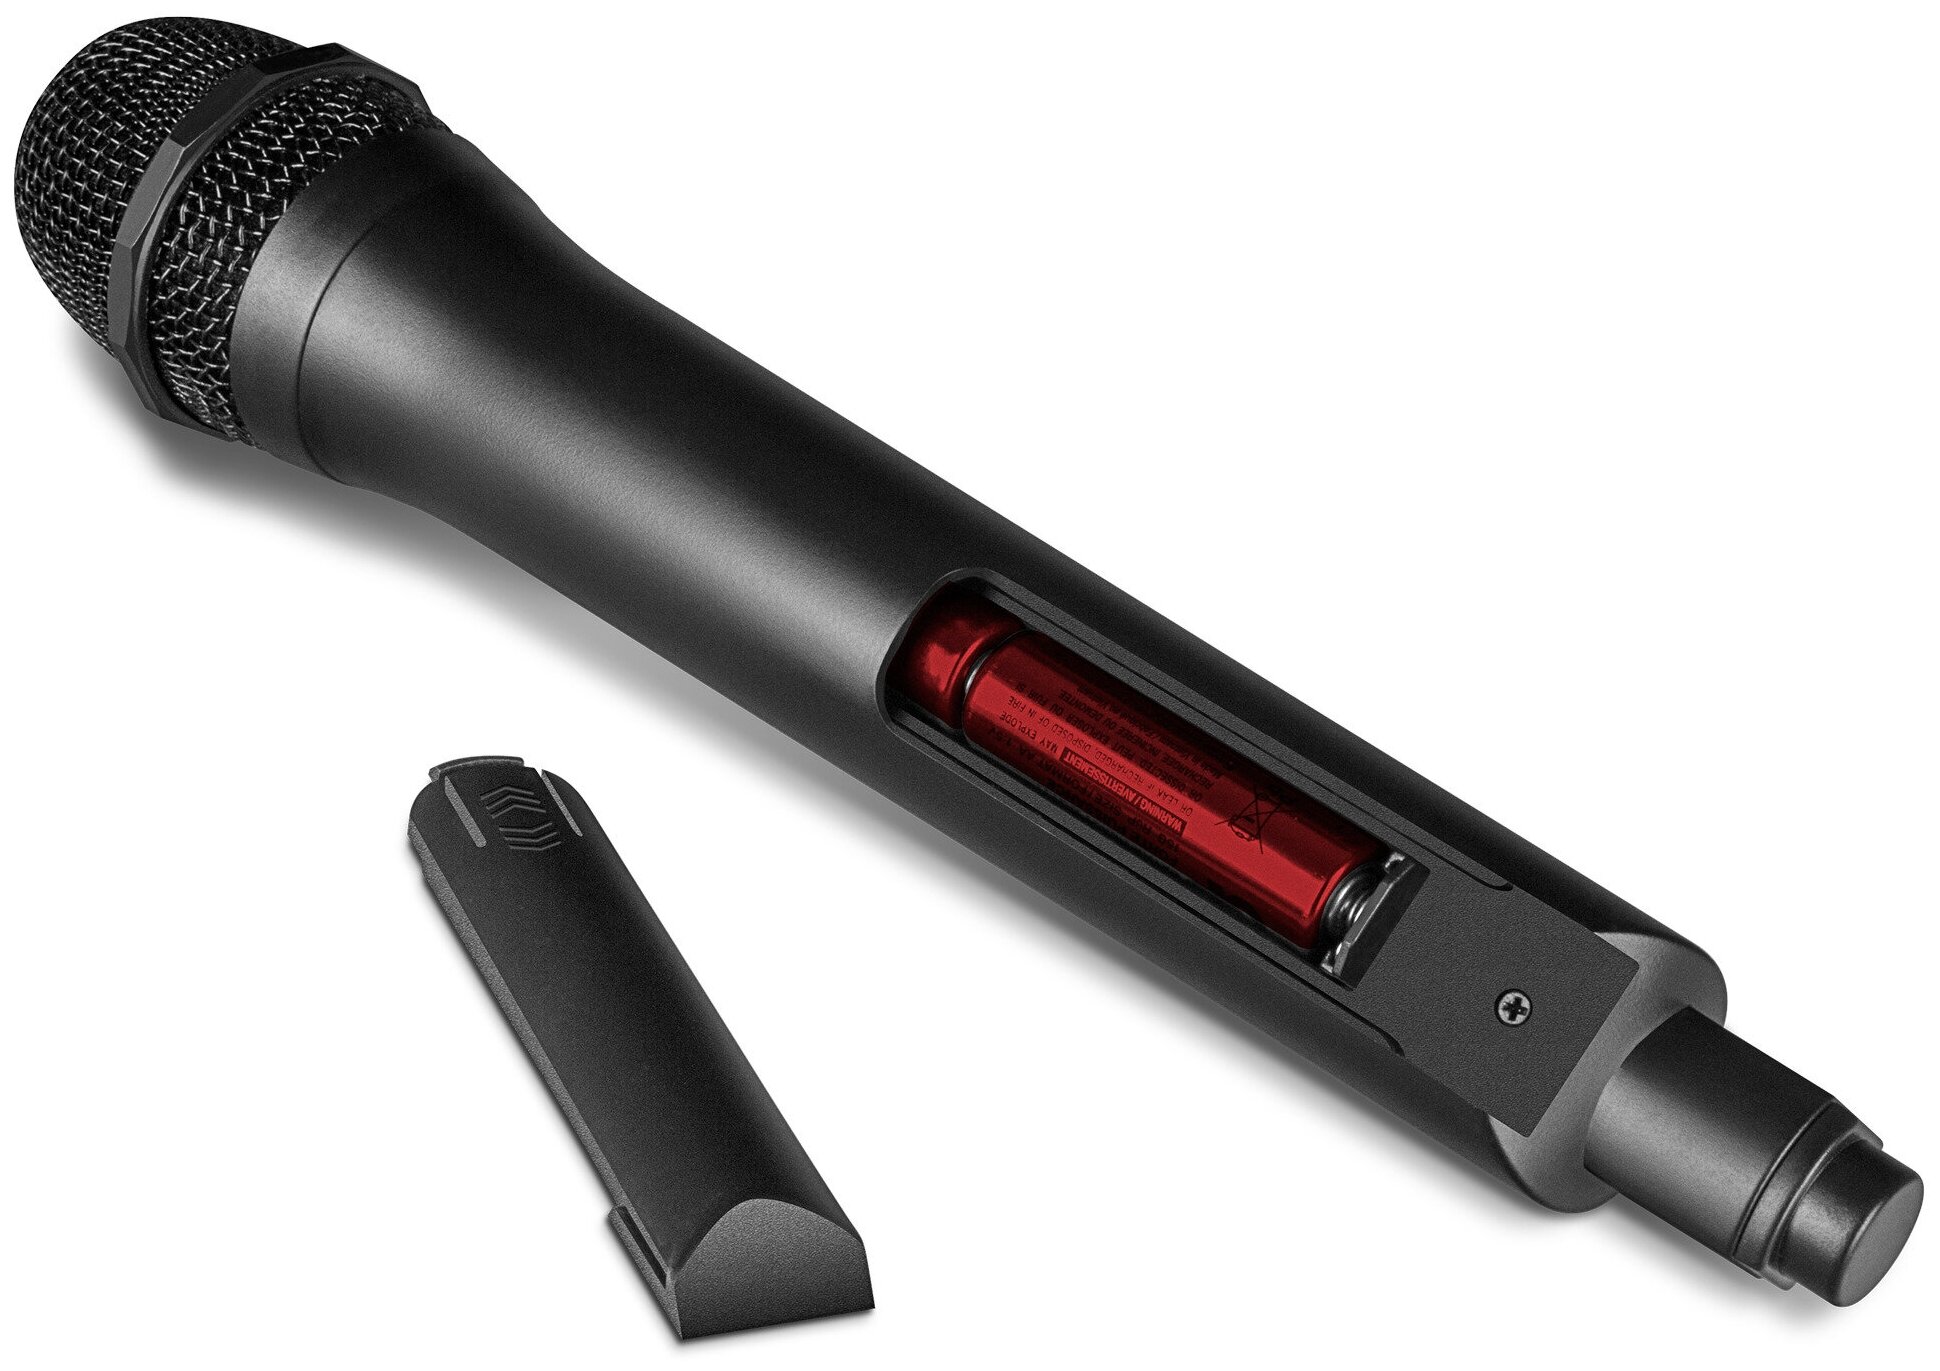 Беспроводной динамический микрофон SVEN MK-710 черный